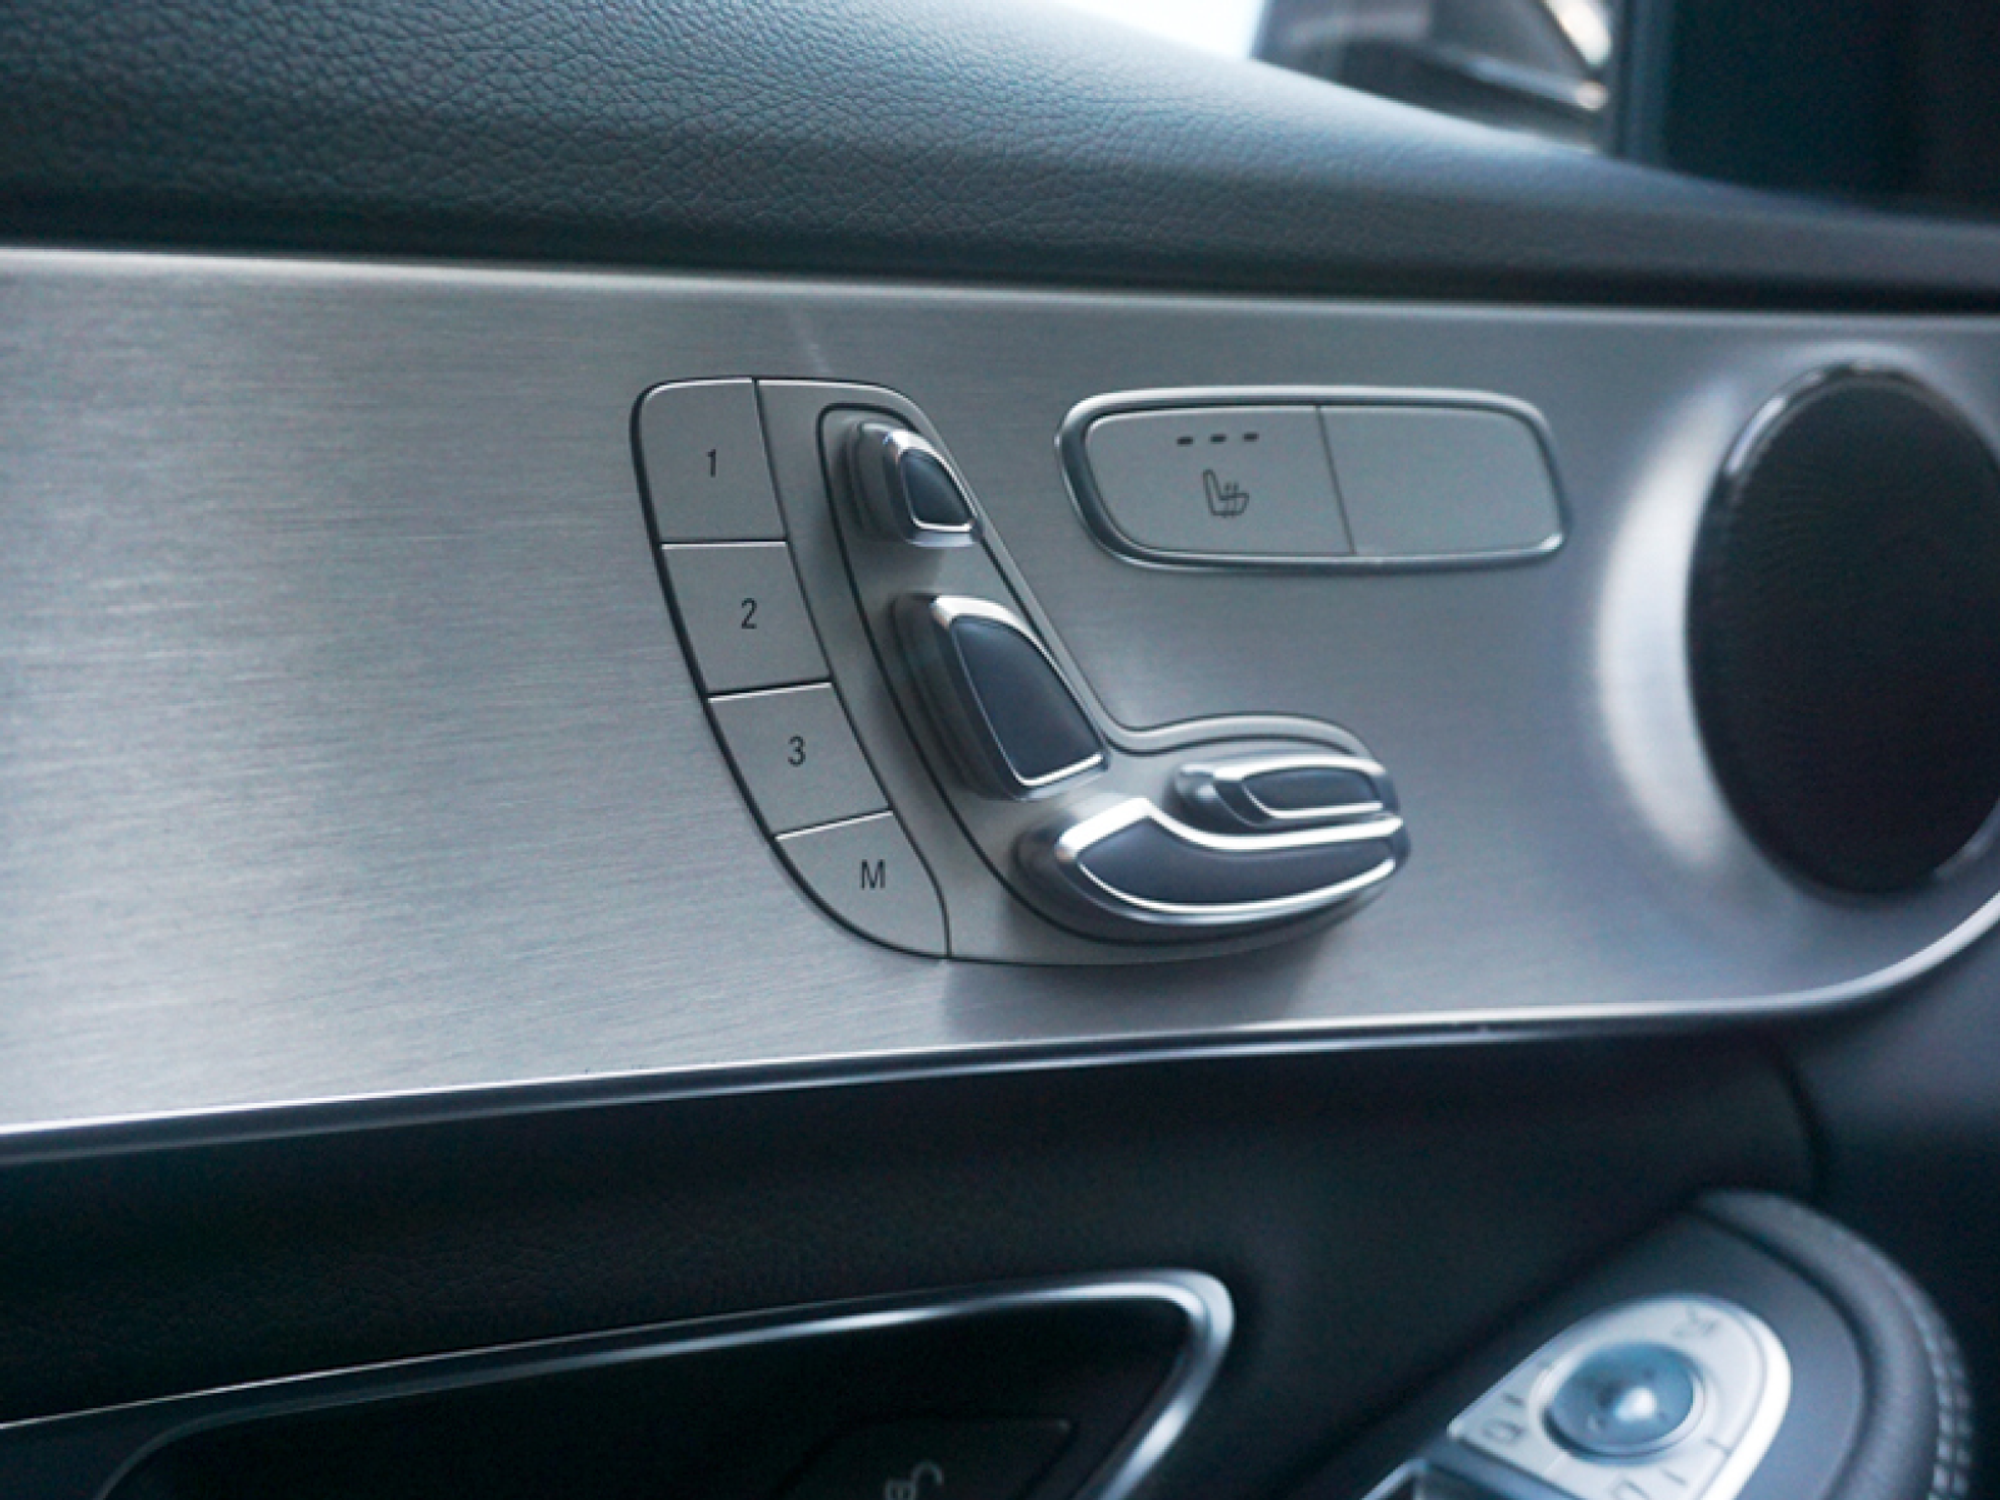 좋은 UX 사례 - 메르세데스 벤츠의 자동차 좌석 제어 장치